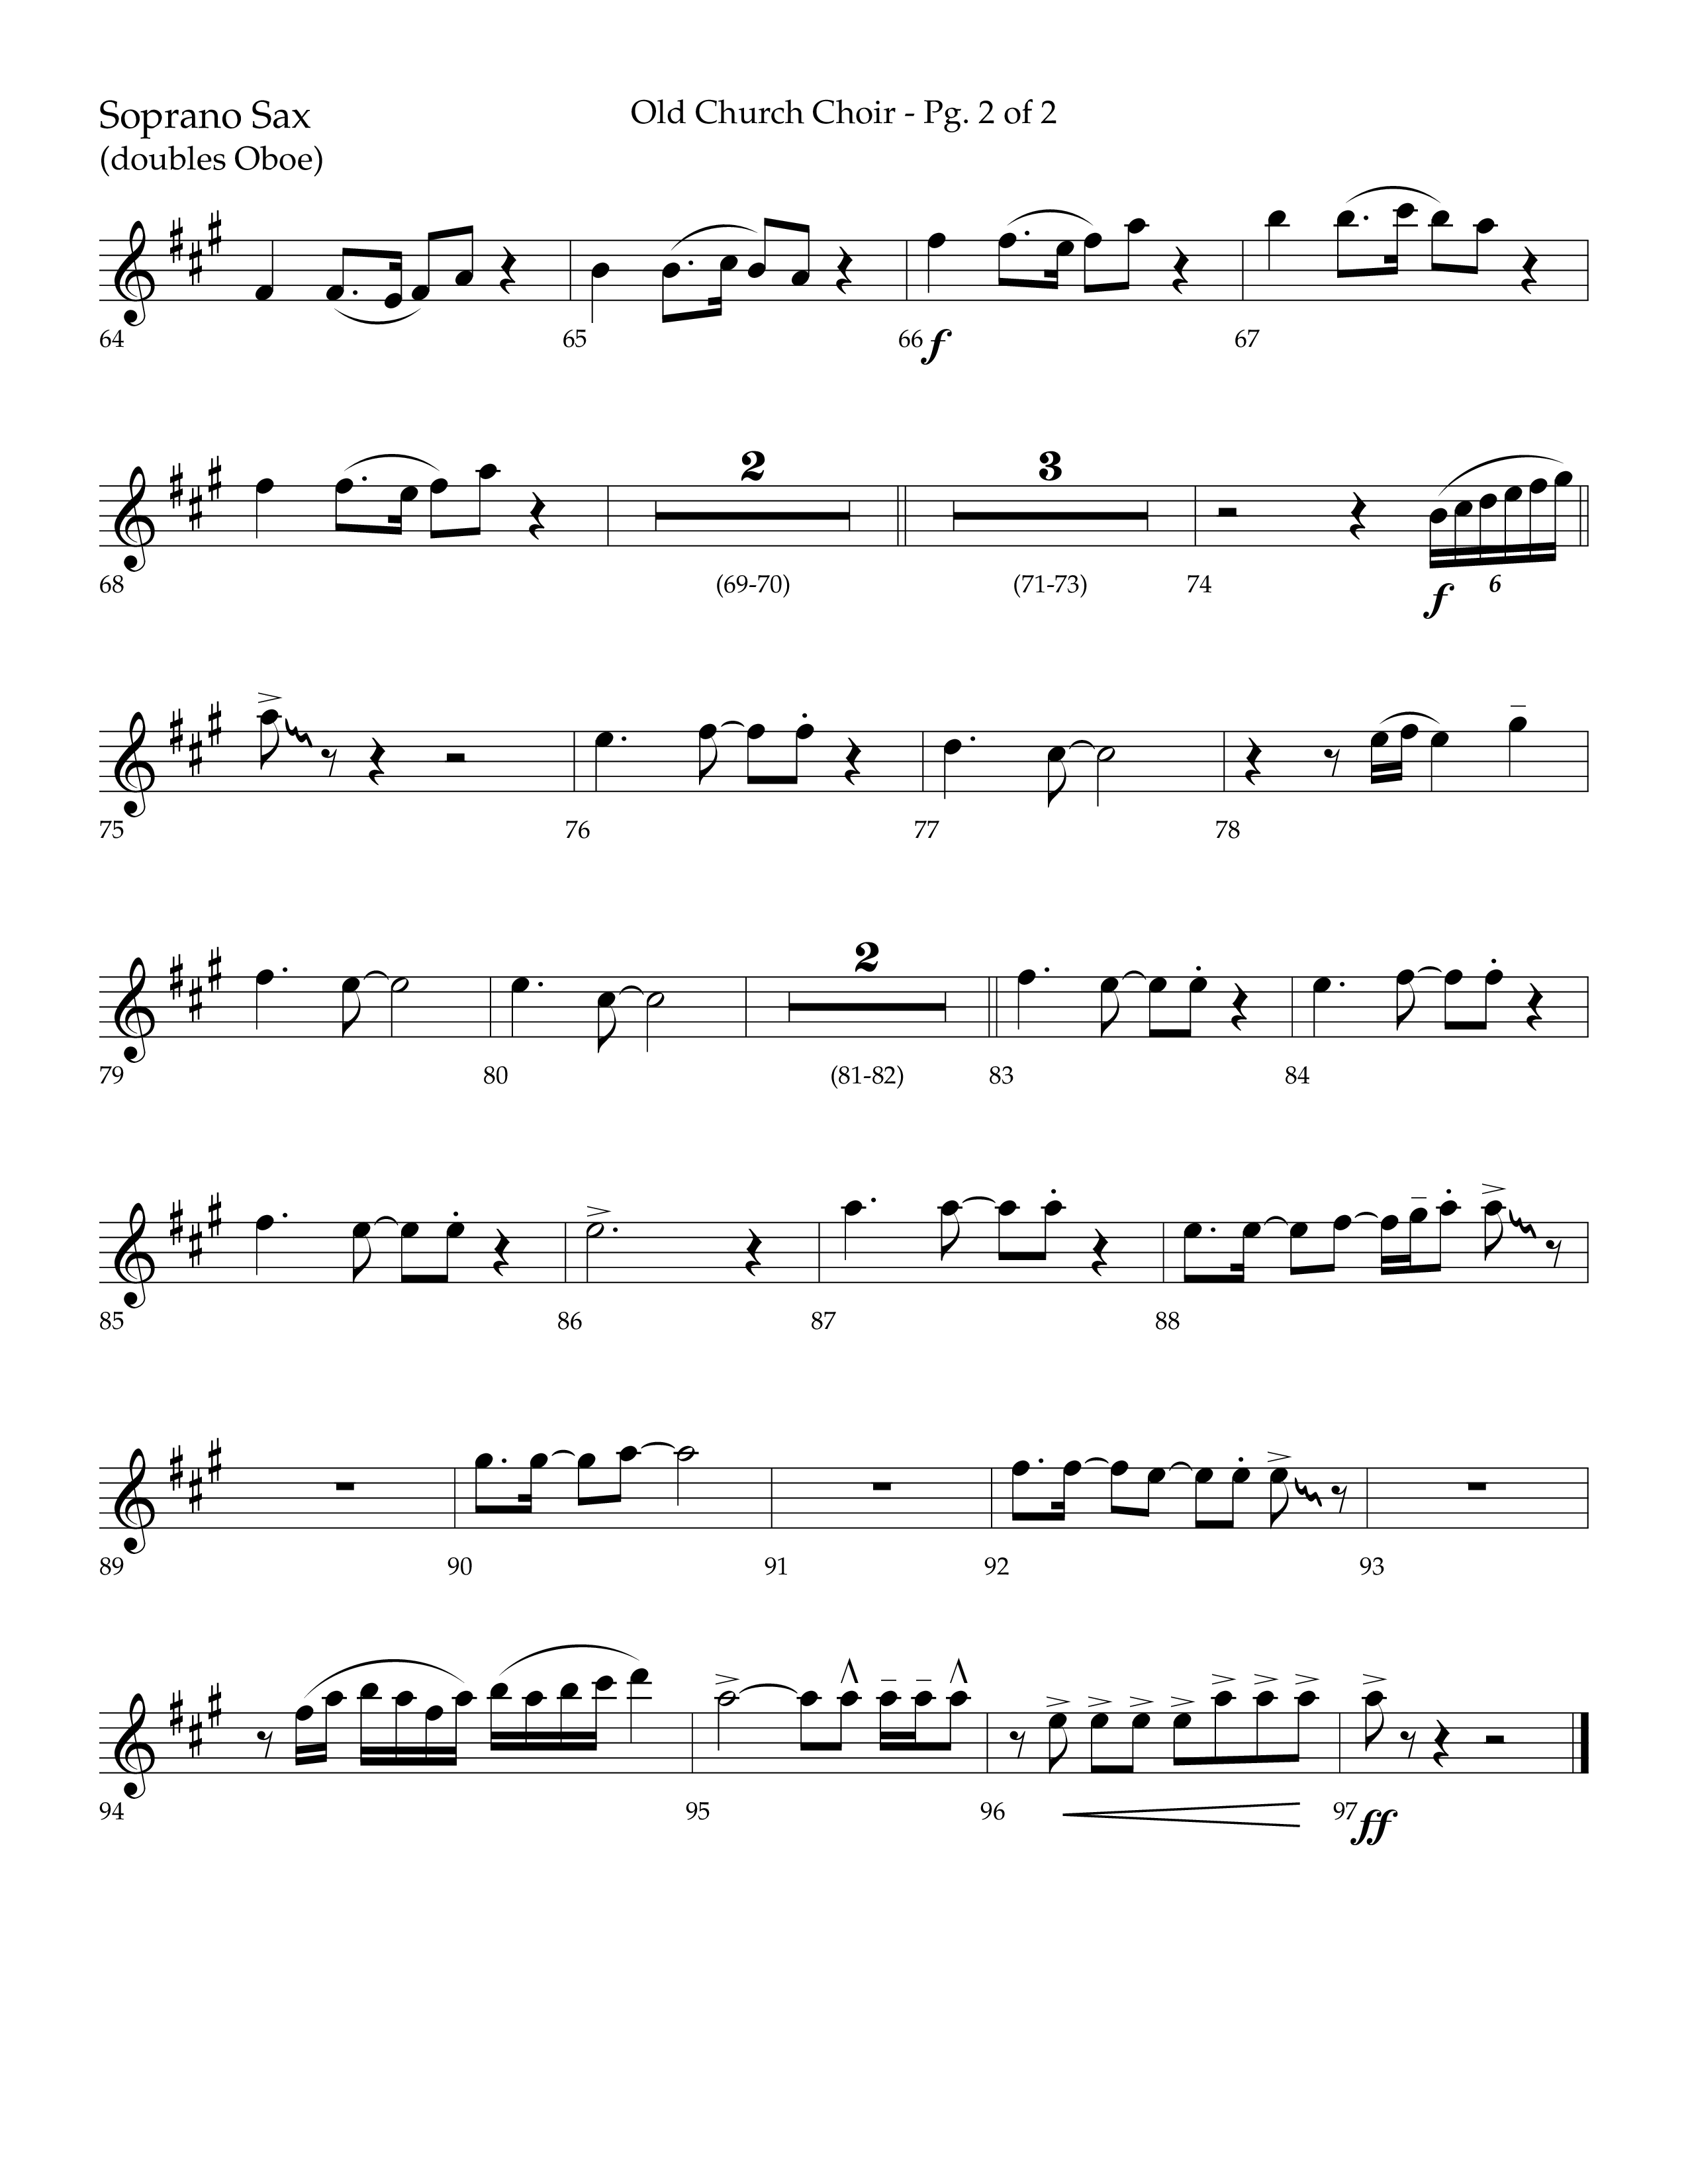 Old Church Choir (Choral Anthem SATB) Soprano Sax (Lifeway Choral / Arr. Ken Barker / Arr. Craig Adams / Arr. Danny Zaloudik)